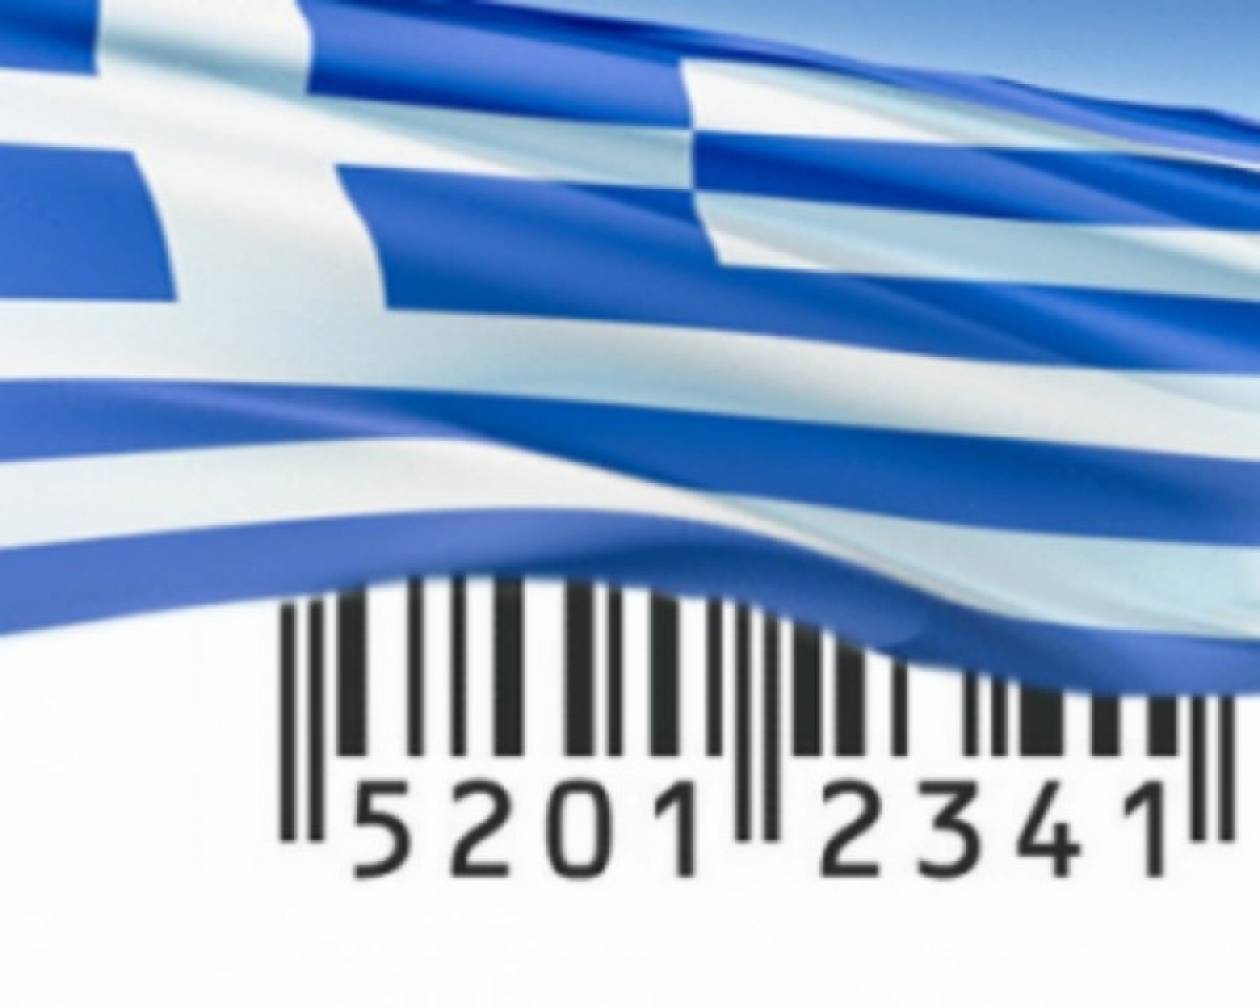 Ζητούνται δημιουργοί για να φτιάξουν το ελληνικό σήμα στα προϊόντα μας